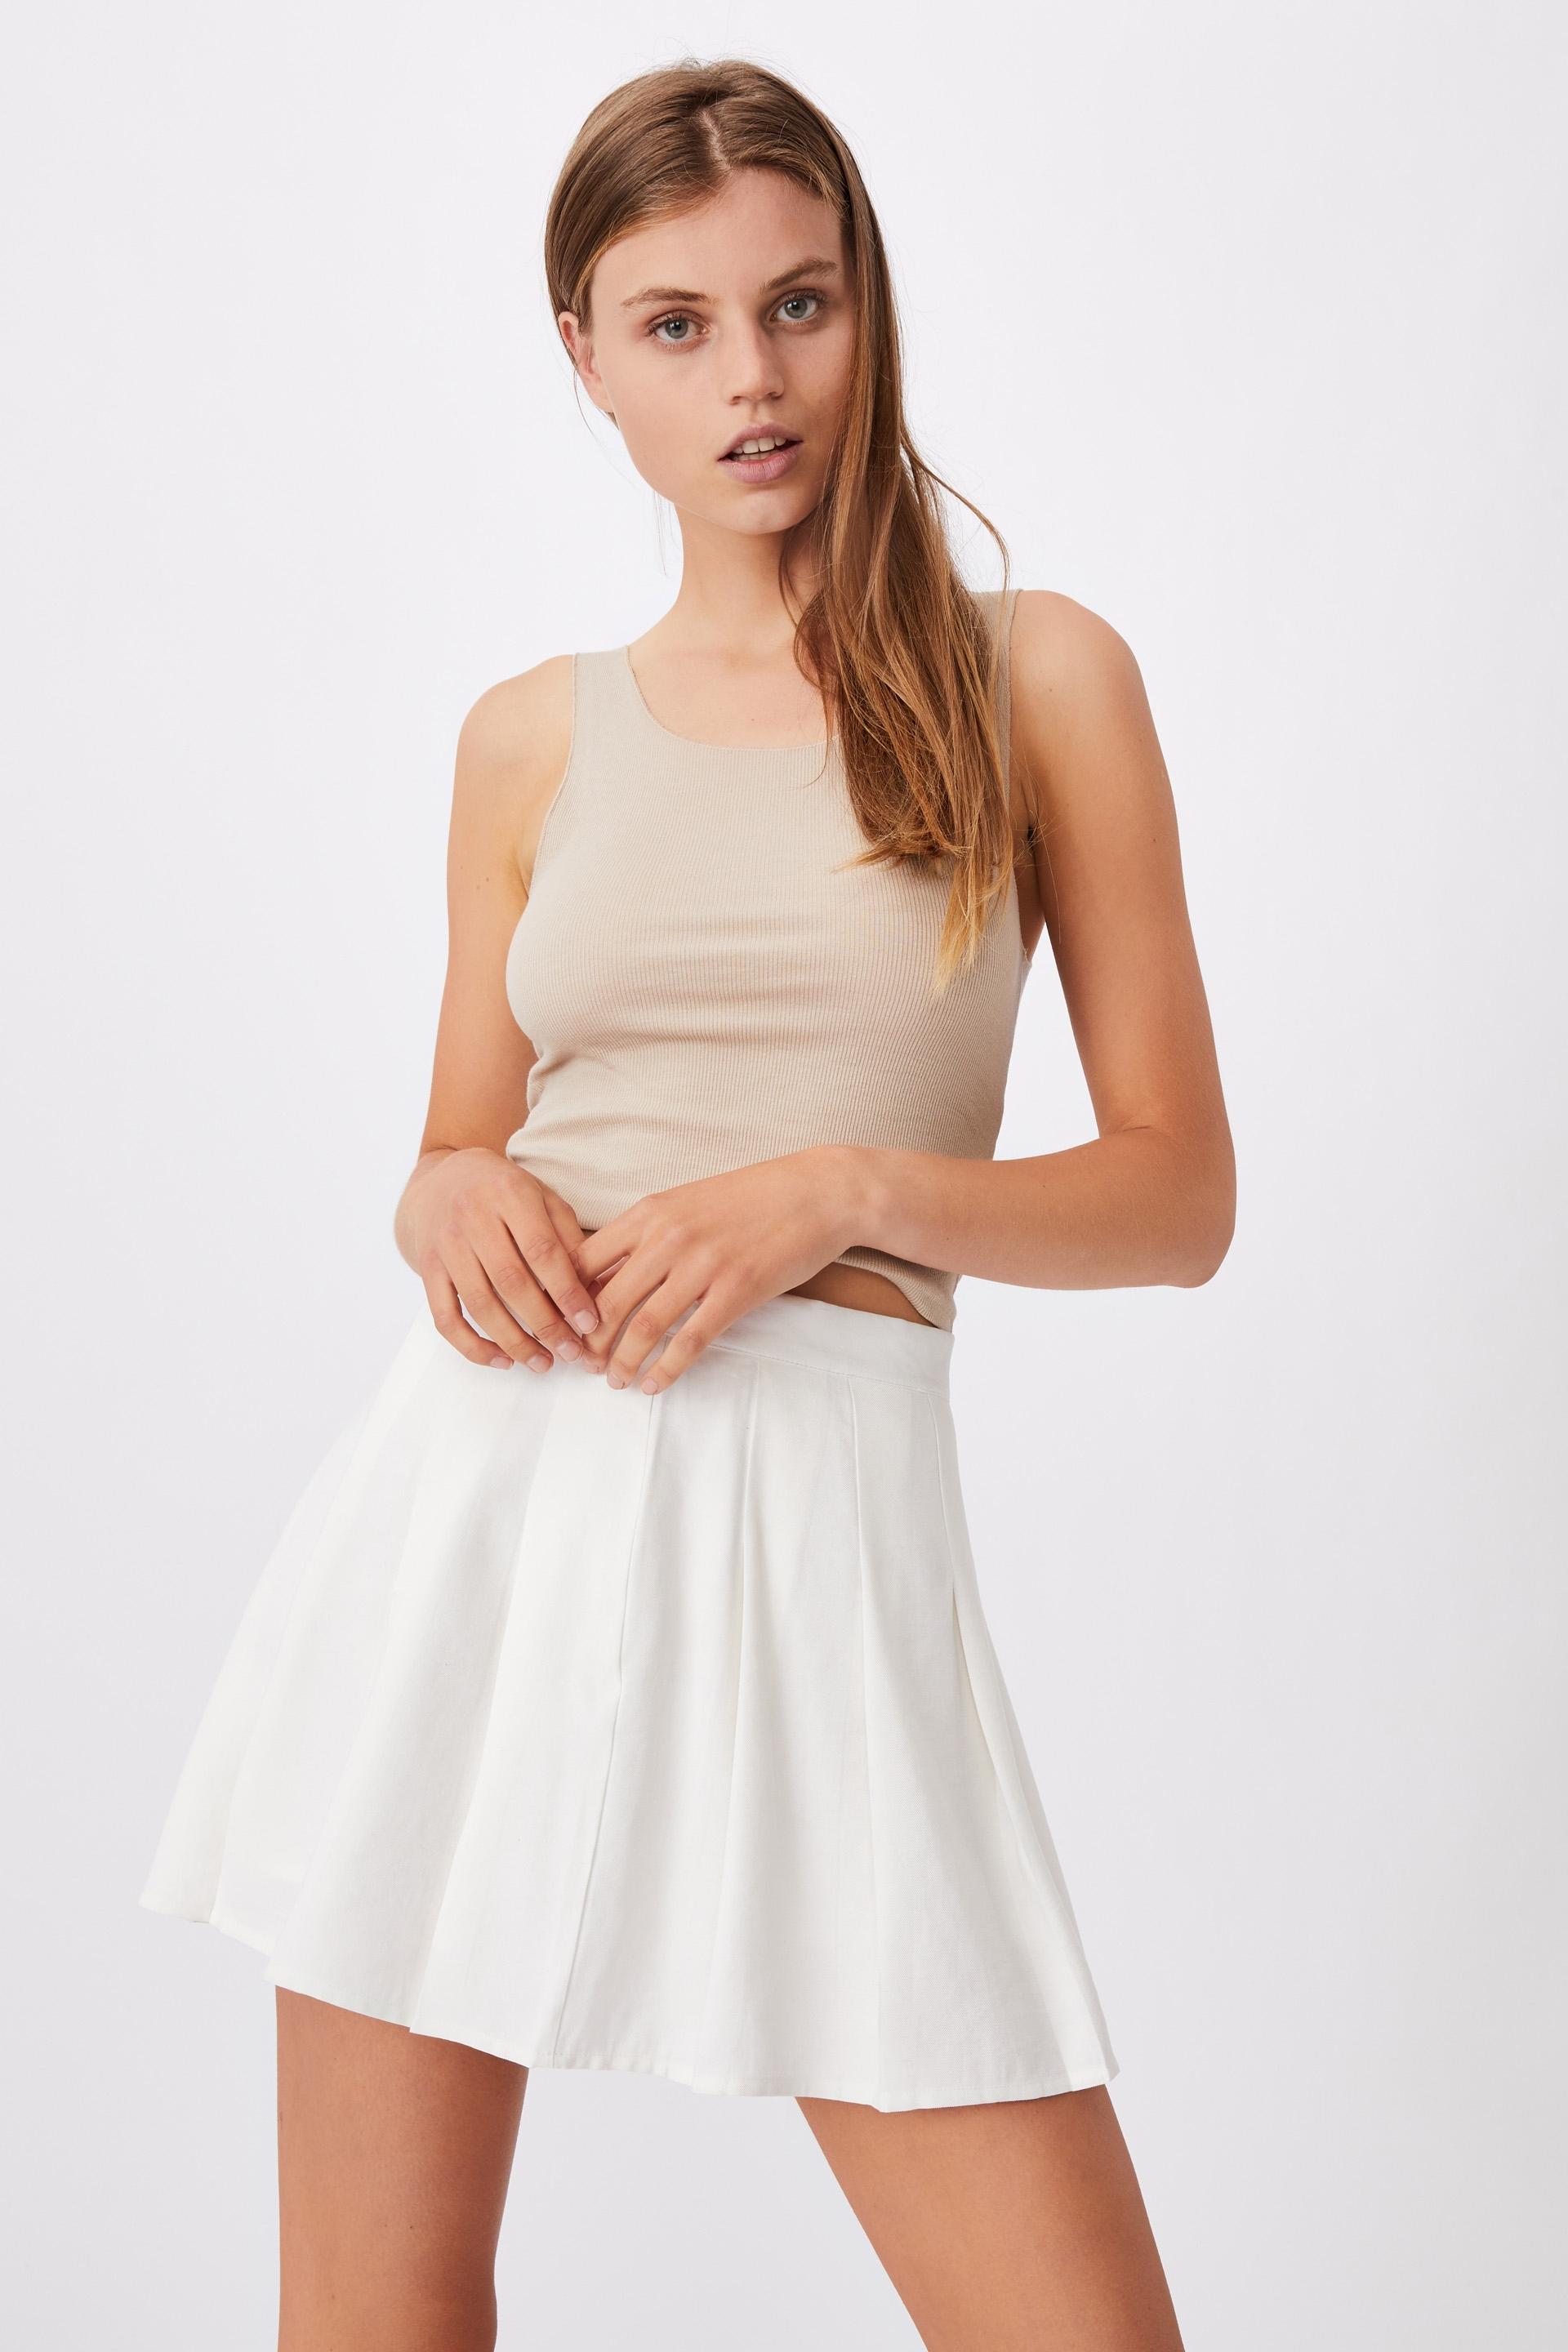 Pleated tennis mini skirt - white Cotton On Skirts | Superbalist.com